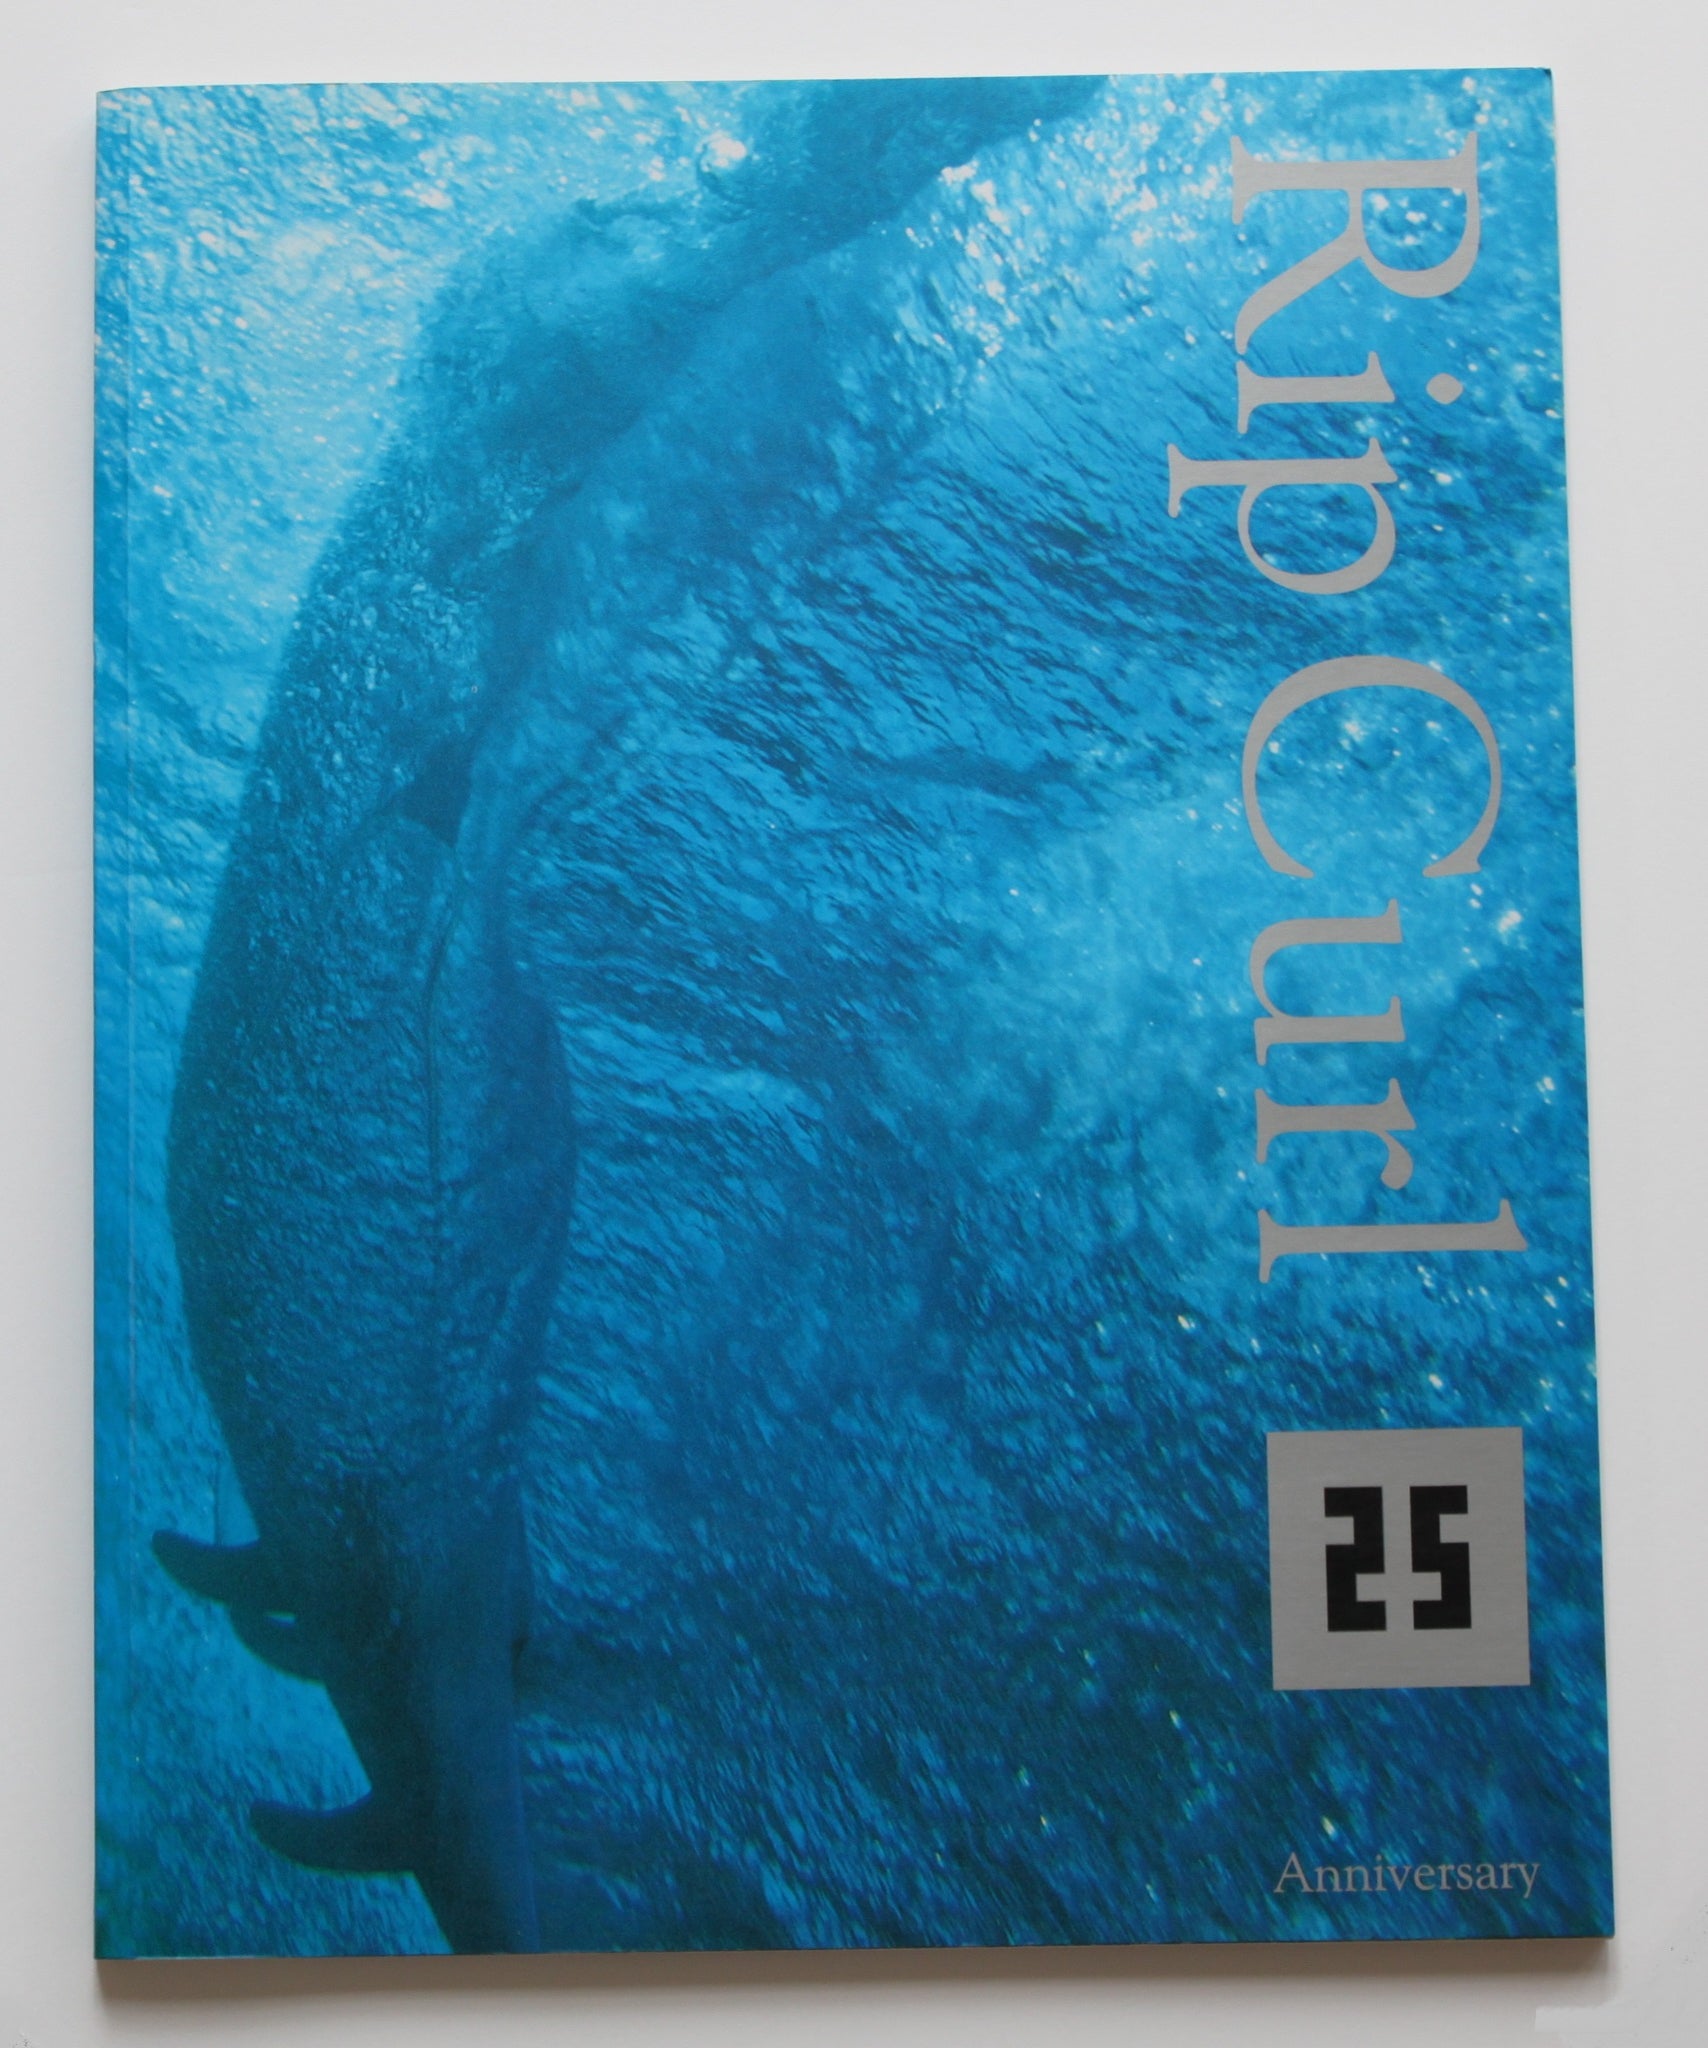 Rip Curl 25th Anniversary Commemorative Booklet.